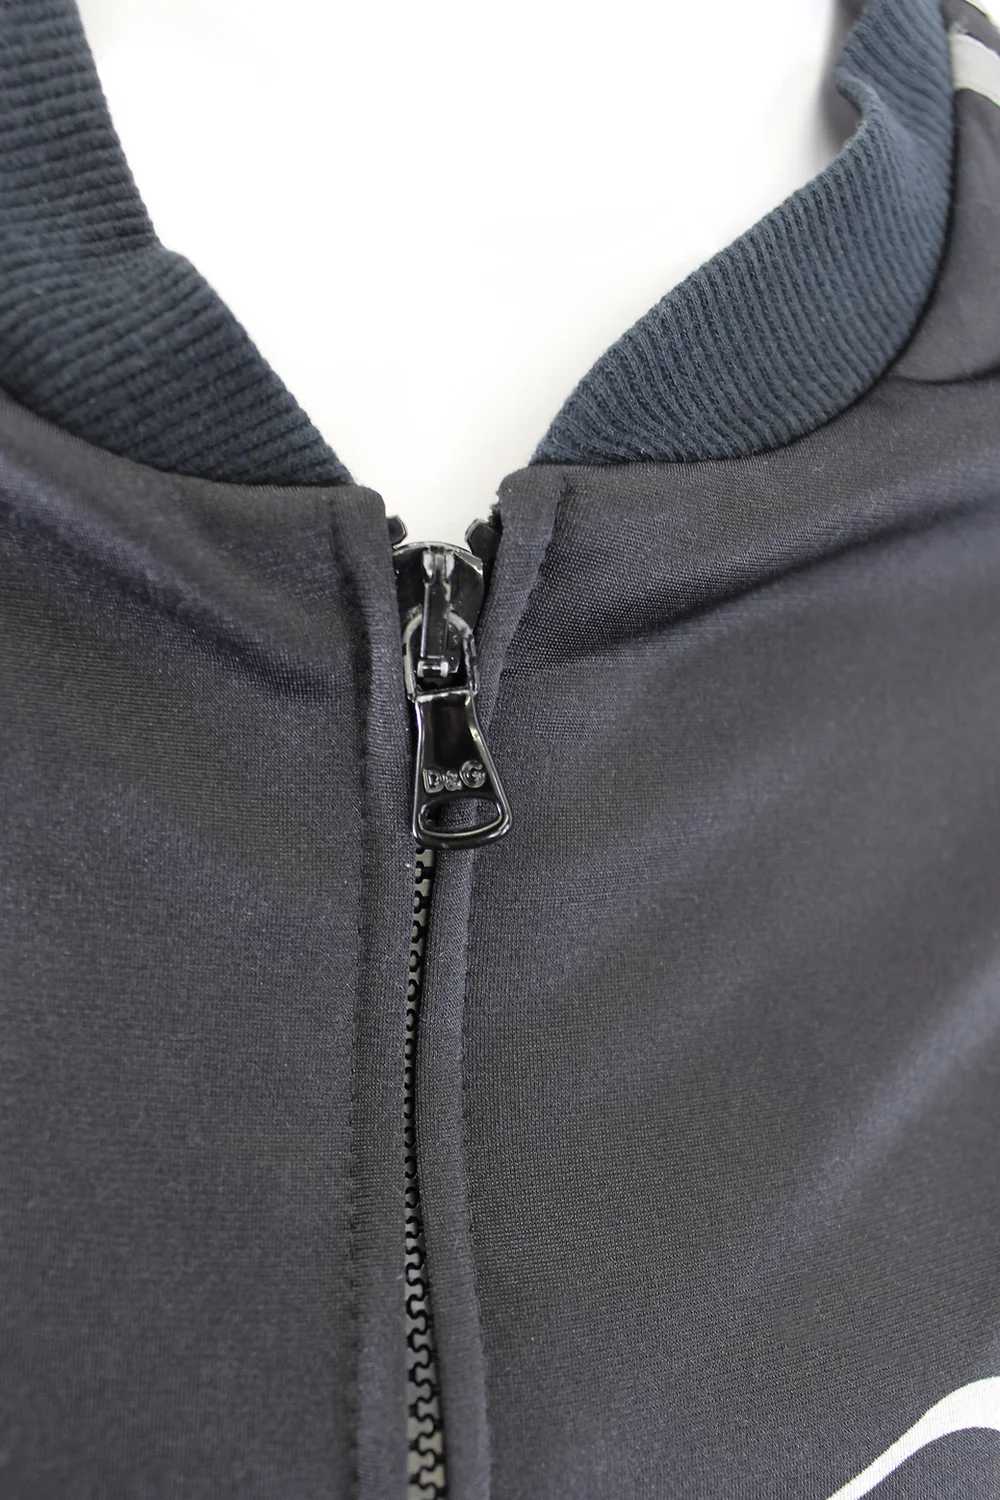 Dolce & Gabbana Black Corset Lace Up Jacket - image 7